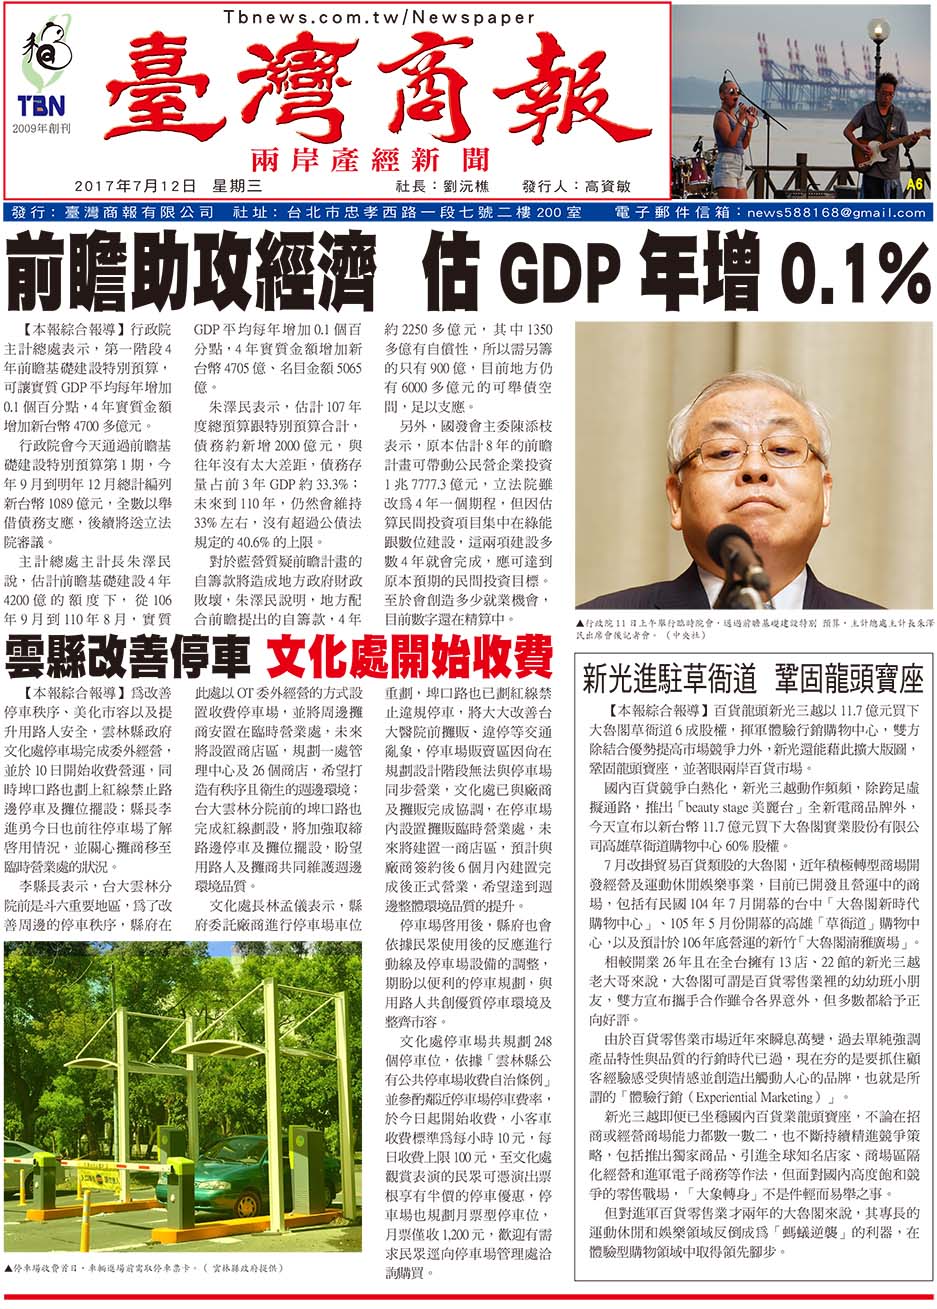 前瞻助攻經濟 估 GDP 年增 0.1%